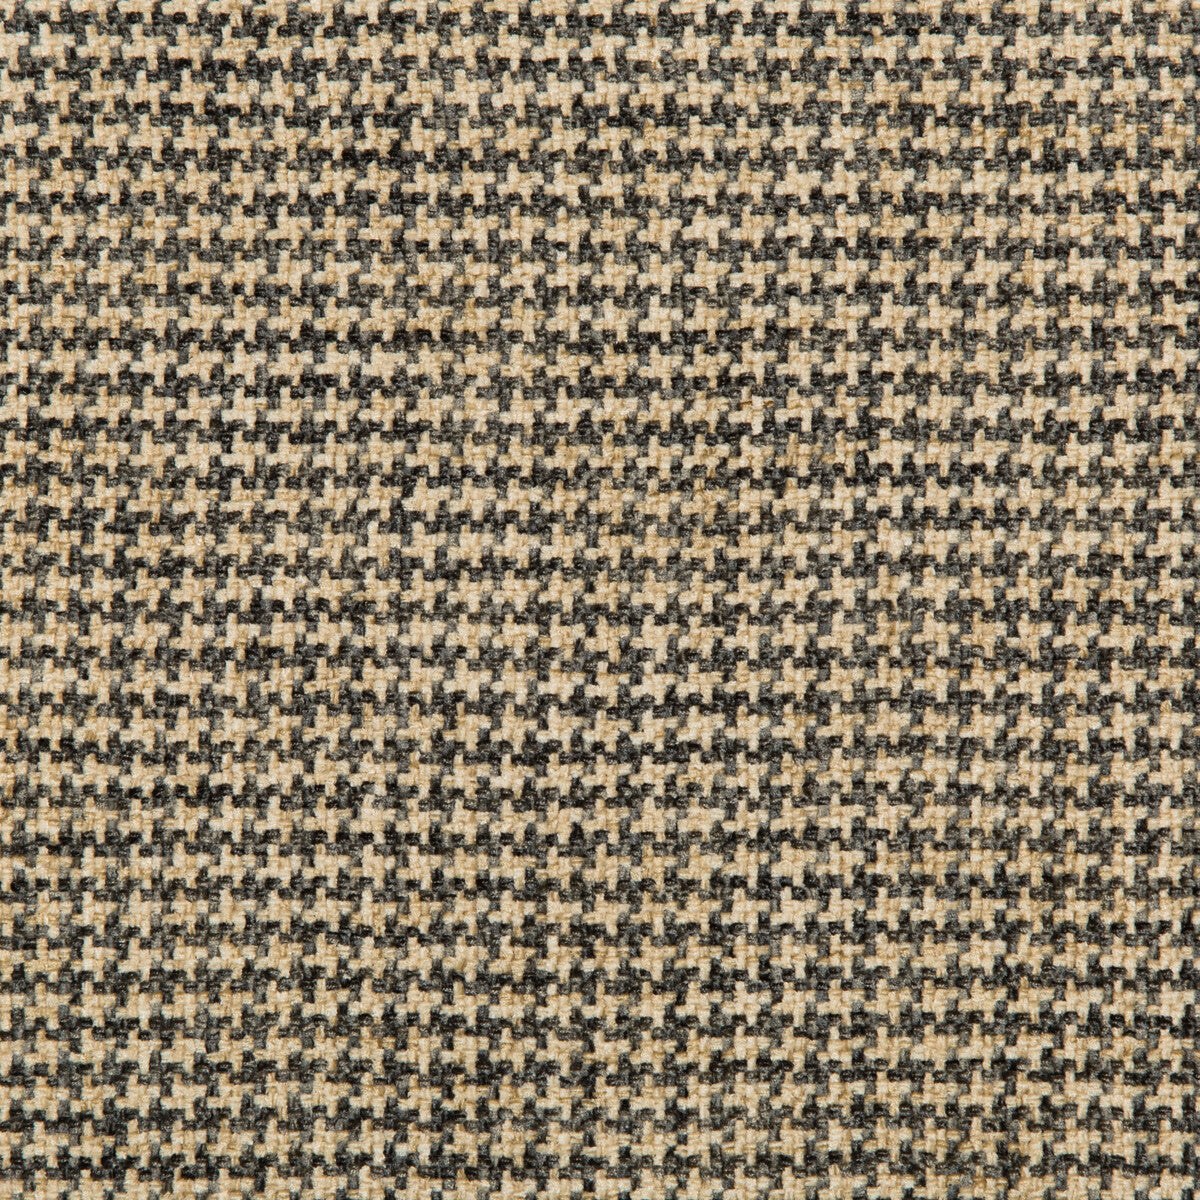 Kravet Basics fabric in 35778-11 color - pattern 35778.11.0 - by Kravet Basics